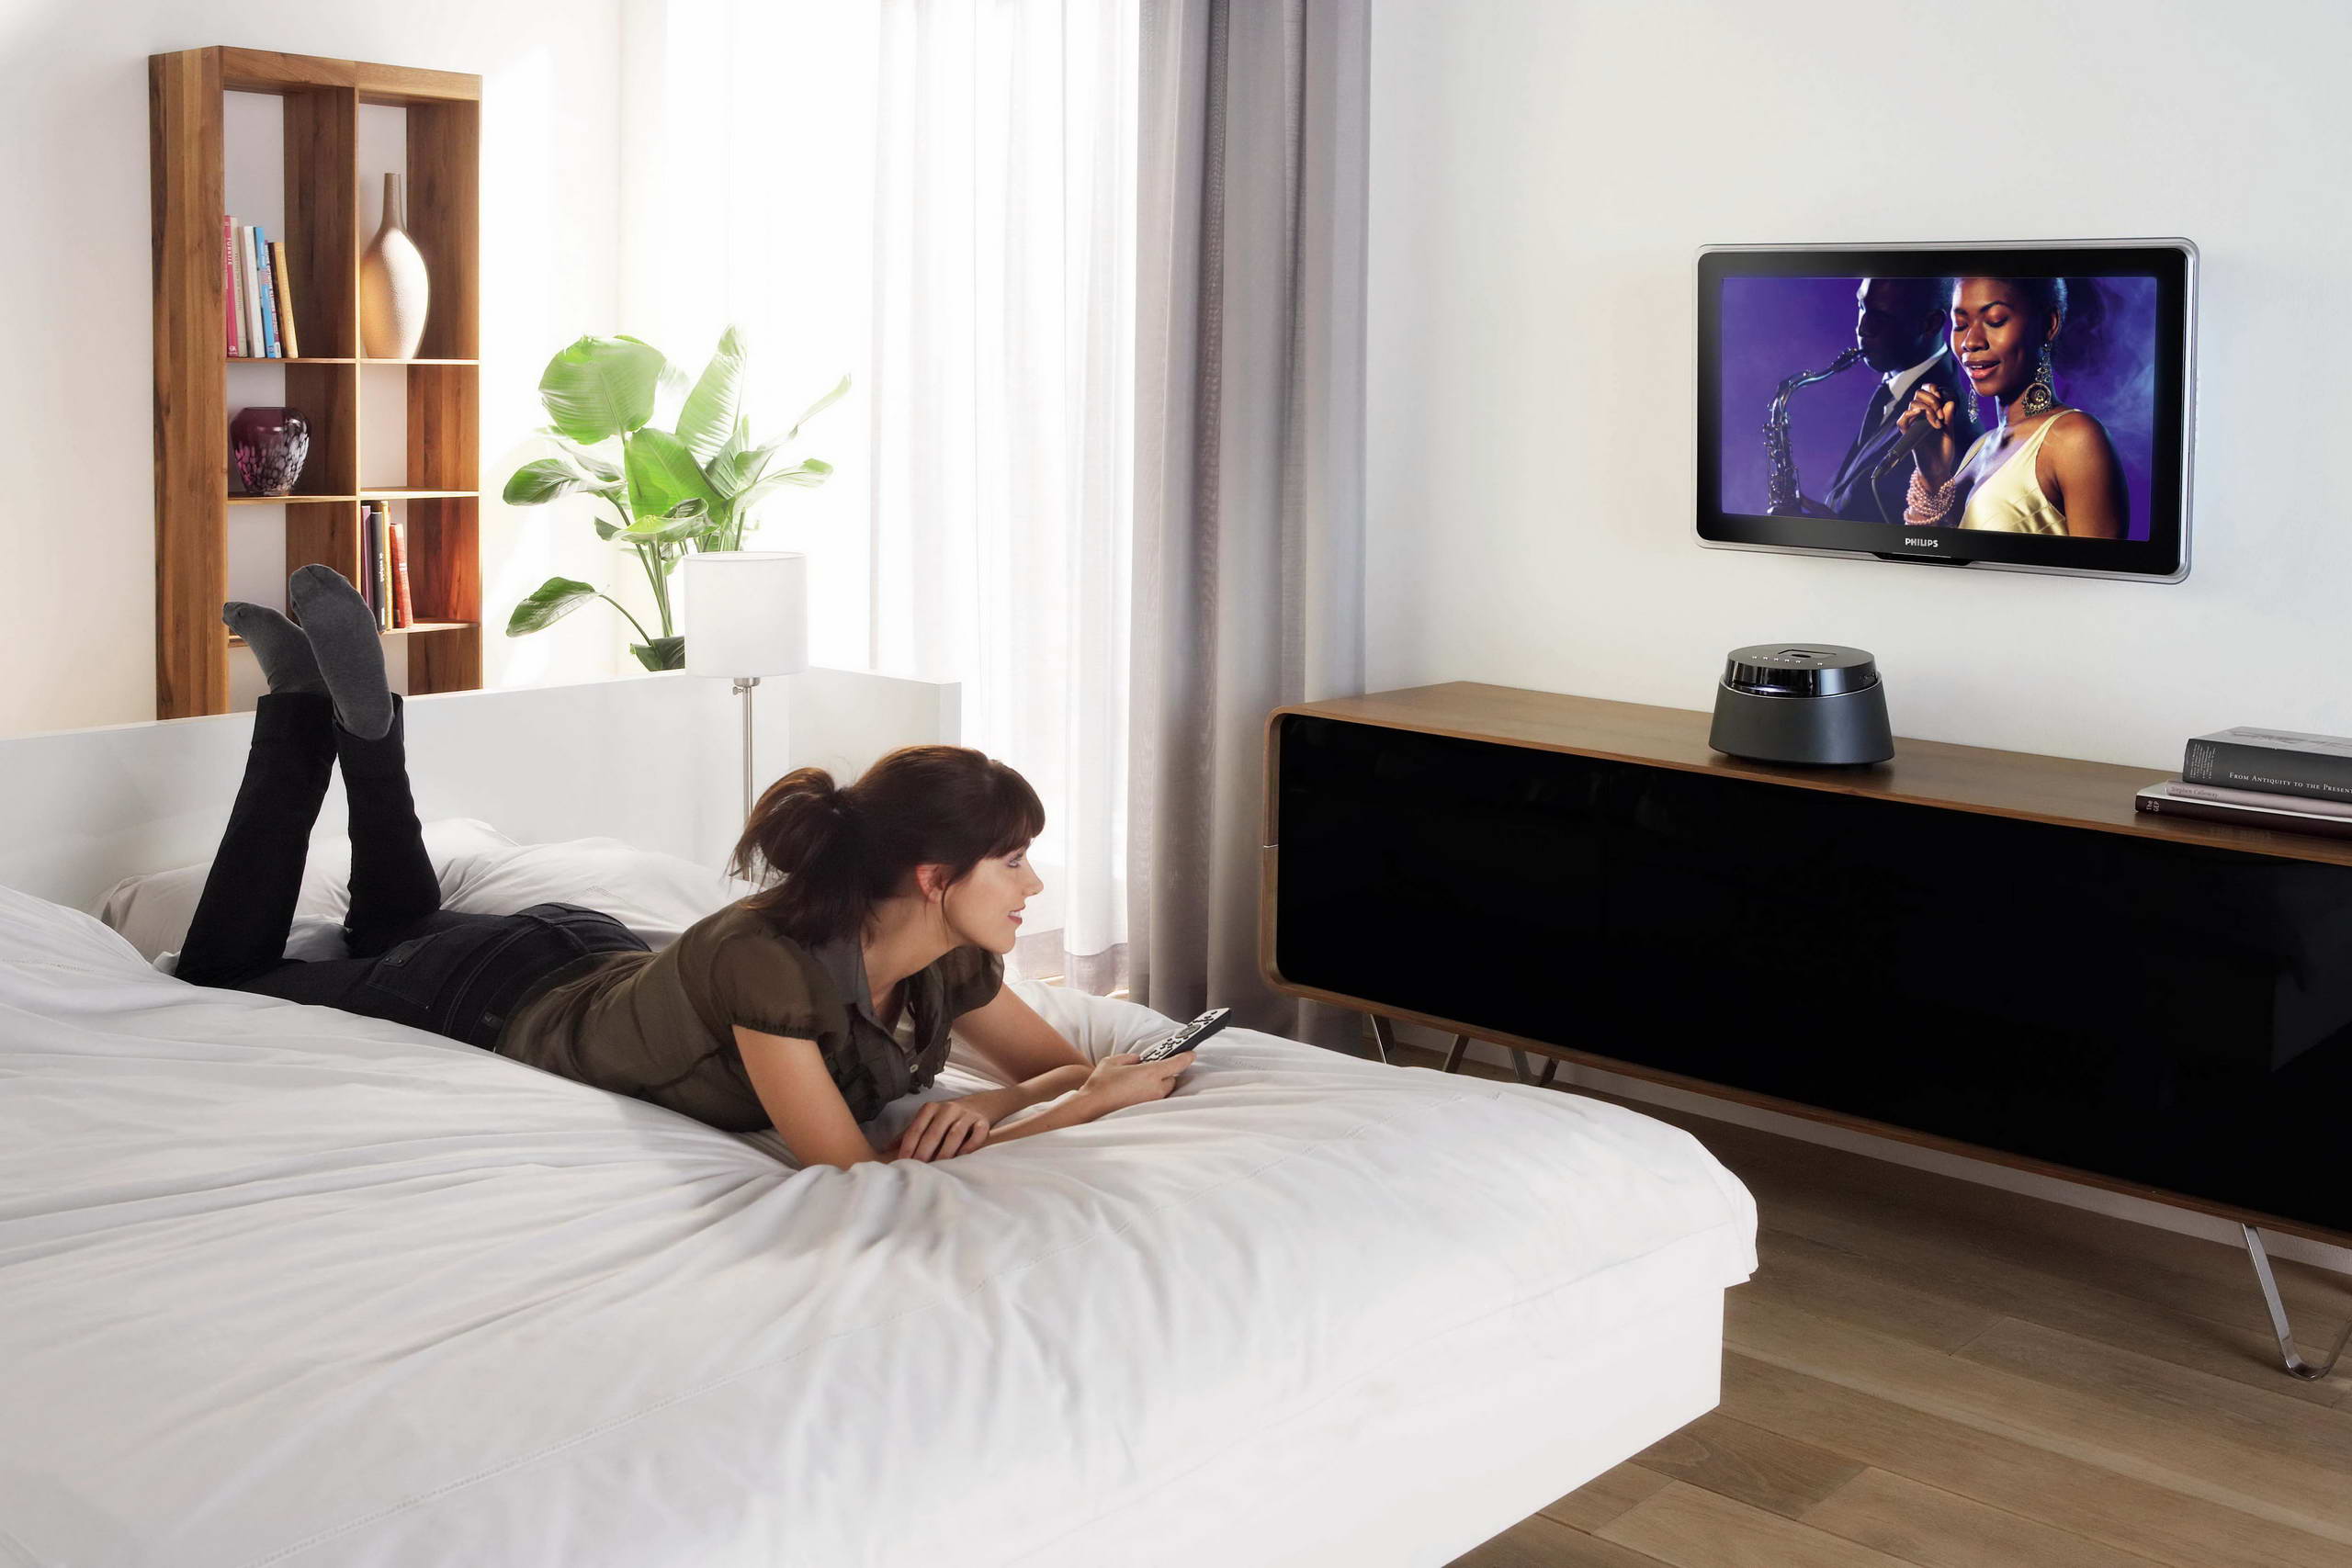 В спальне перед телевизором. Телевизор в спальне. Телевизор перед кроватью. Лежит перед телевизором. Люди в спальне.